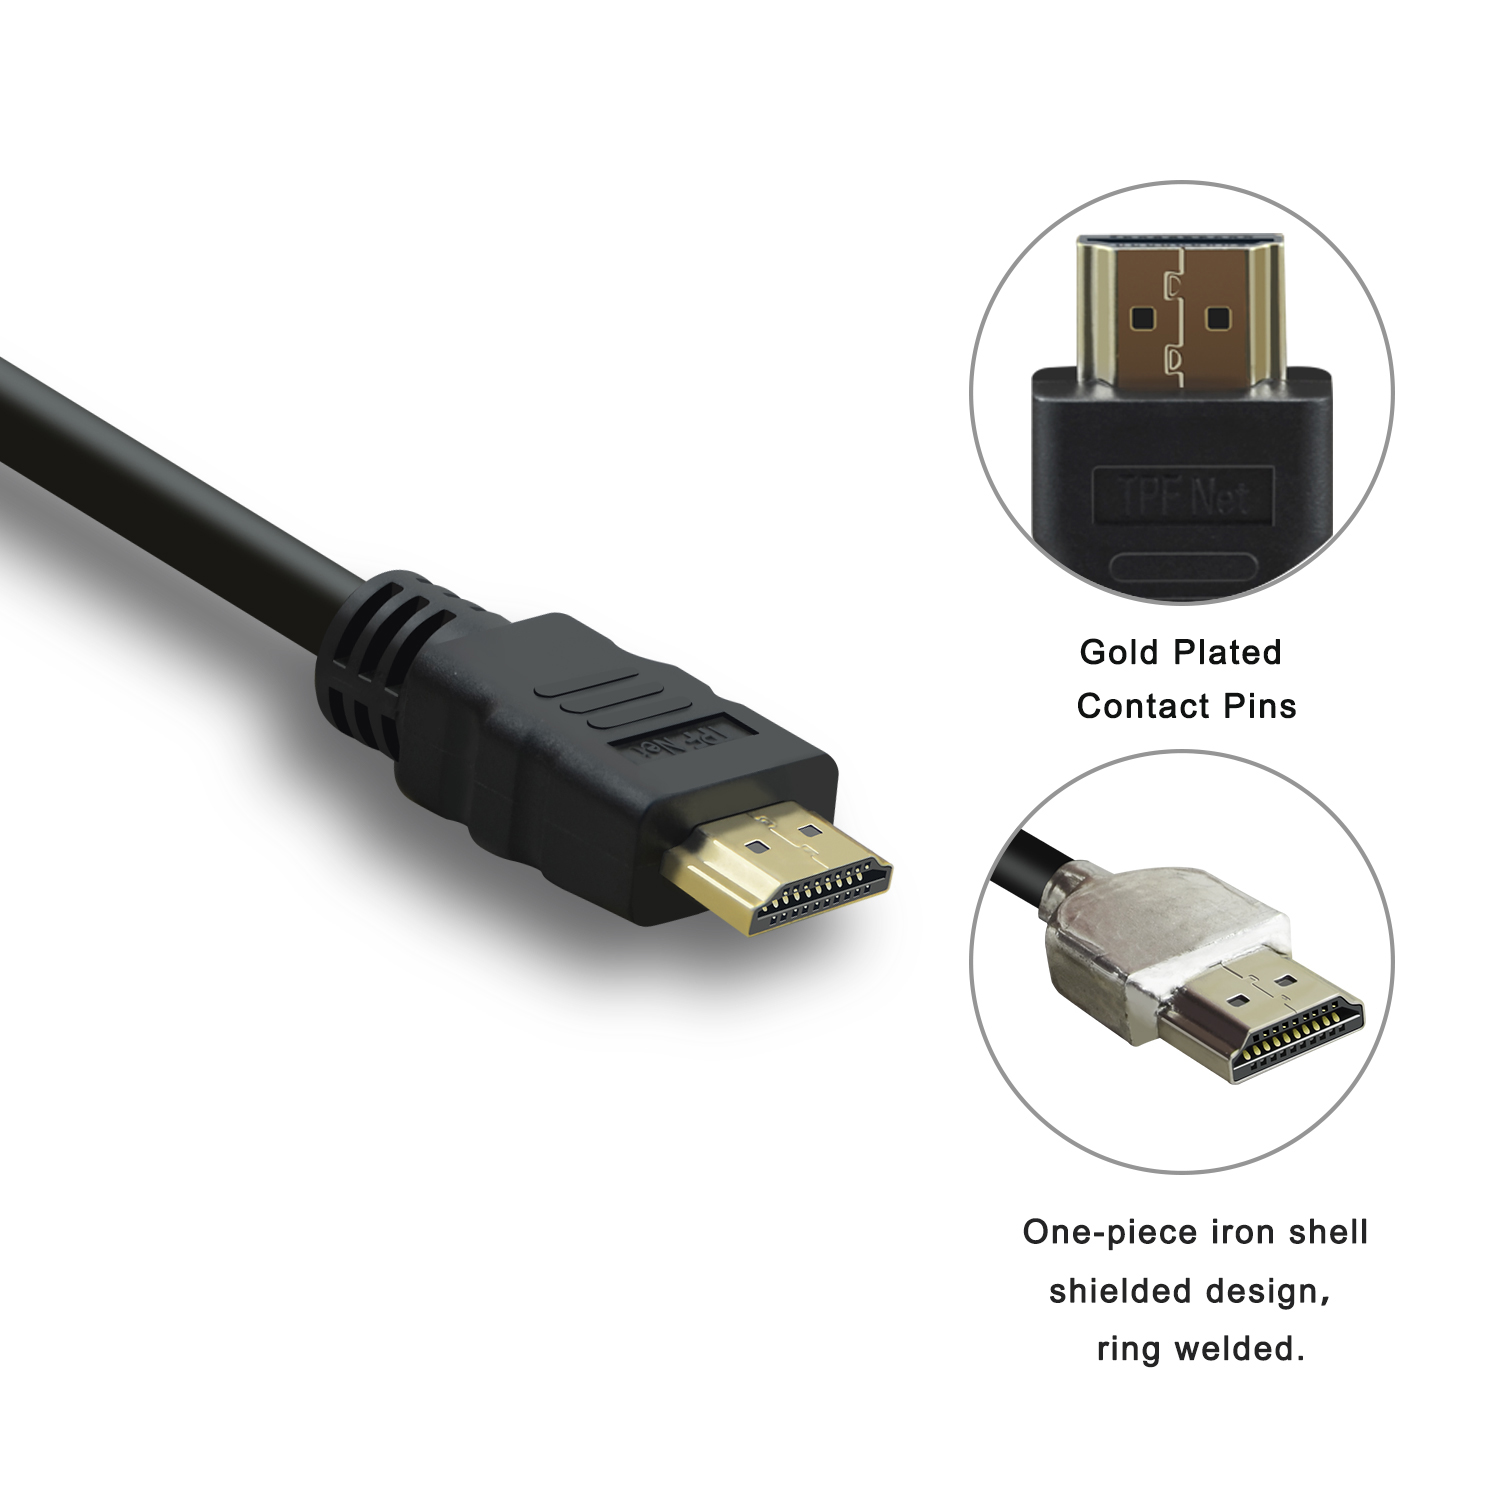 Premium 8K, Ethernet, HD, Schwarz TPFNET HDMI-Kabel, abwärtskompatibel, schwarz, HDMI-Kabel Pack 5m mit Ultra 3er